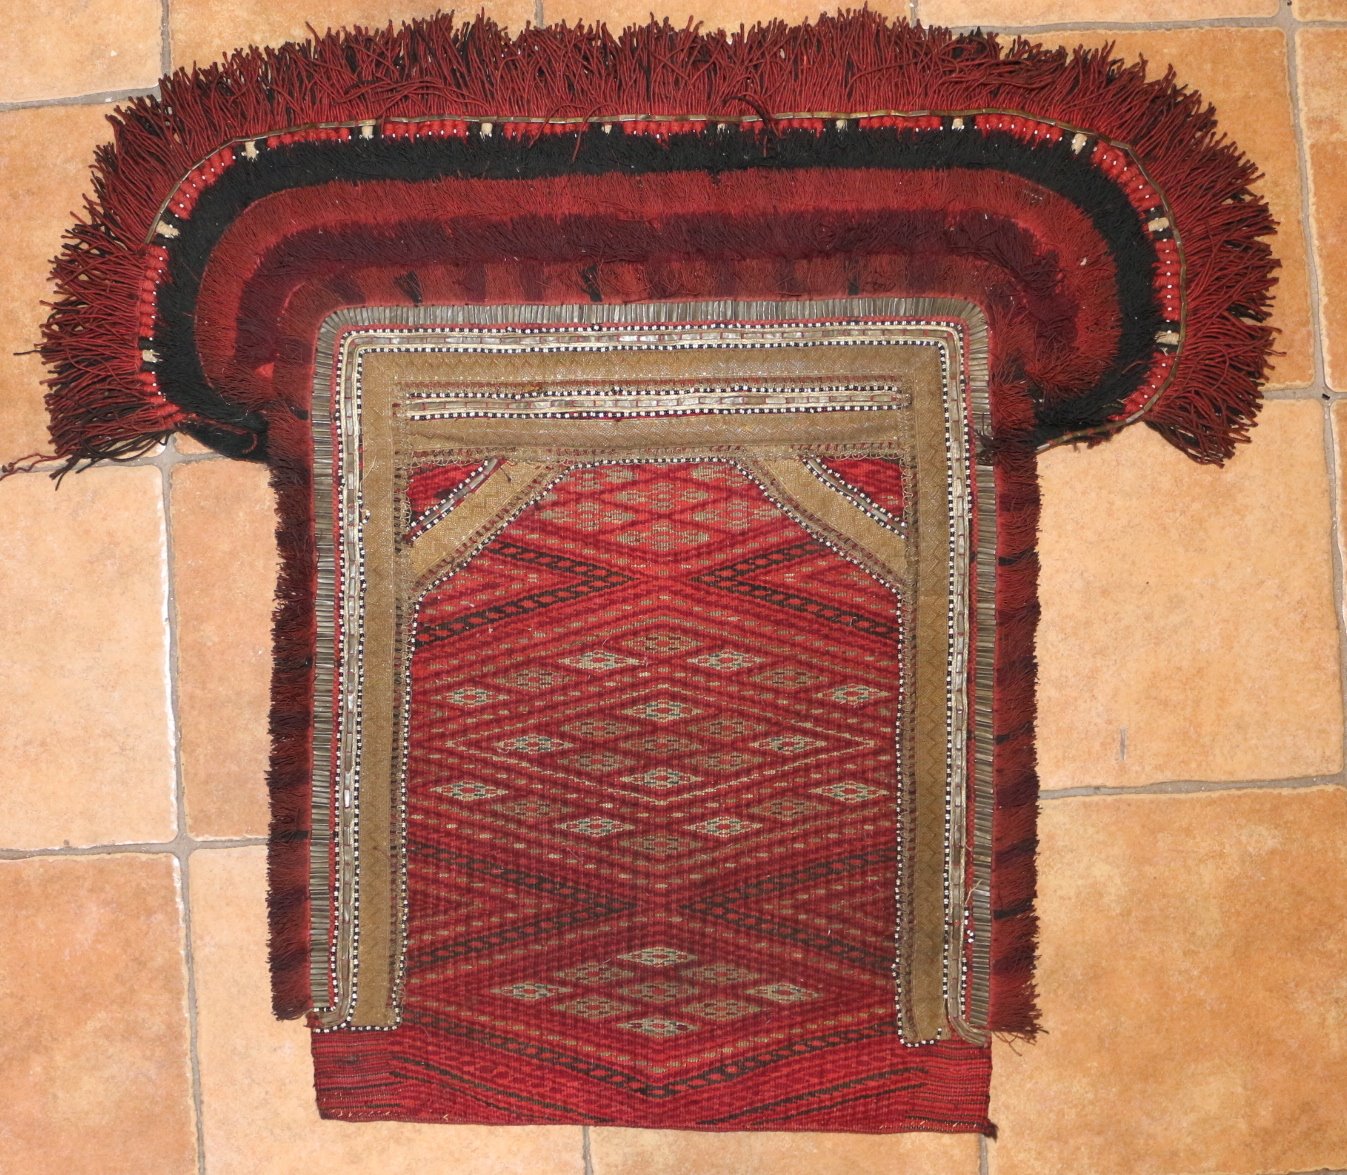 Střední Asie, 1. pol. 20. stol. - Textilní dekorativní ozdoba velbloudů nebo koní